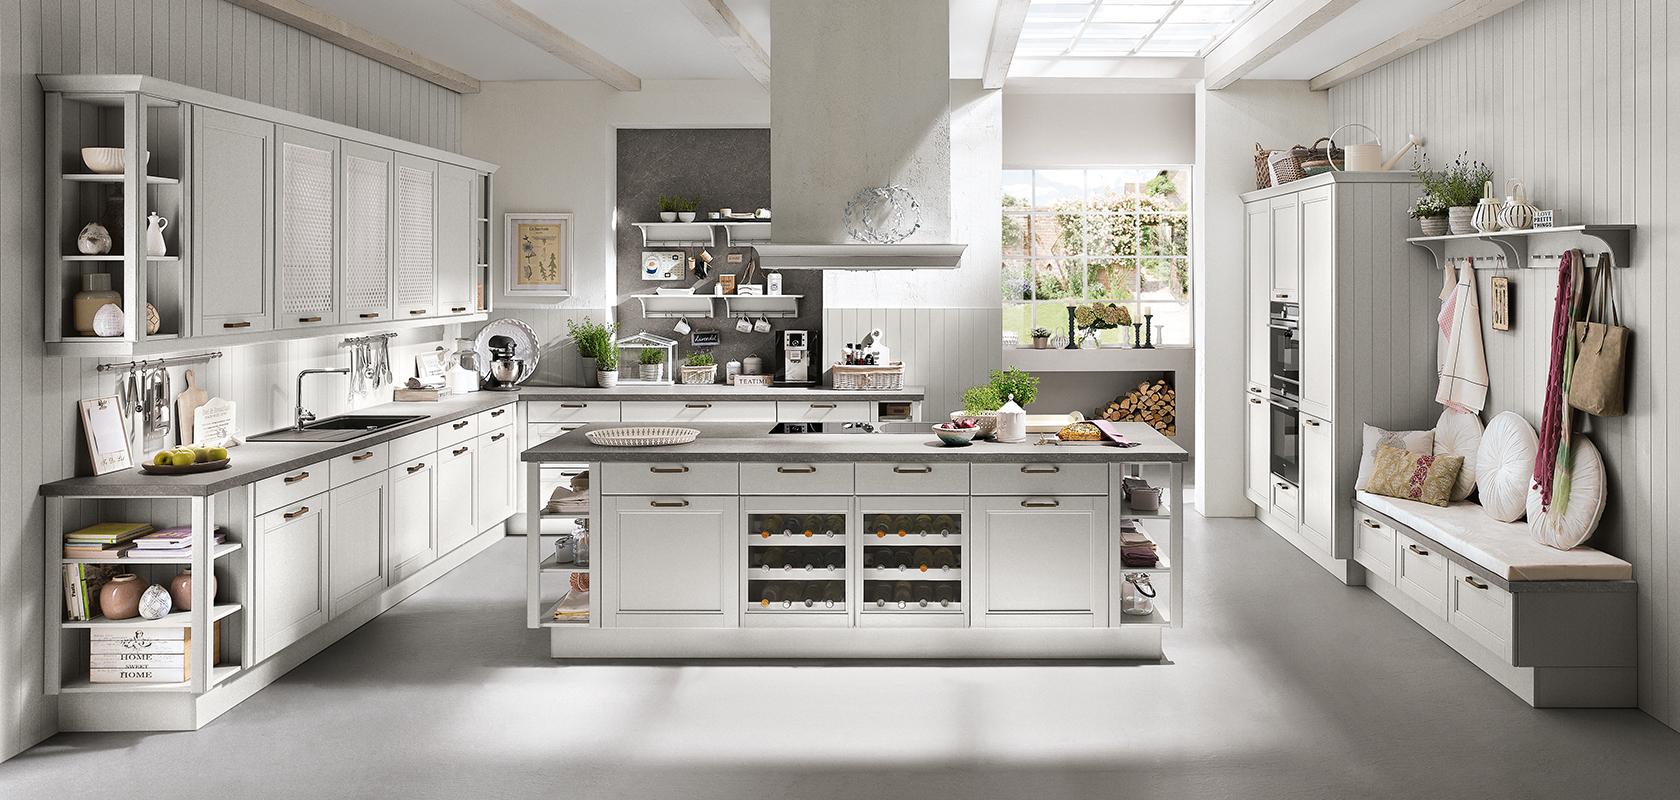 Jasna, nowoczesna kuchnia z białymi szafkami, centralną wyspą i stalowymi urządzeniami AGD, prezentująca elegancki i czysty design.